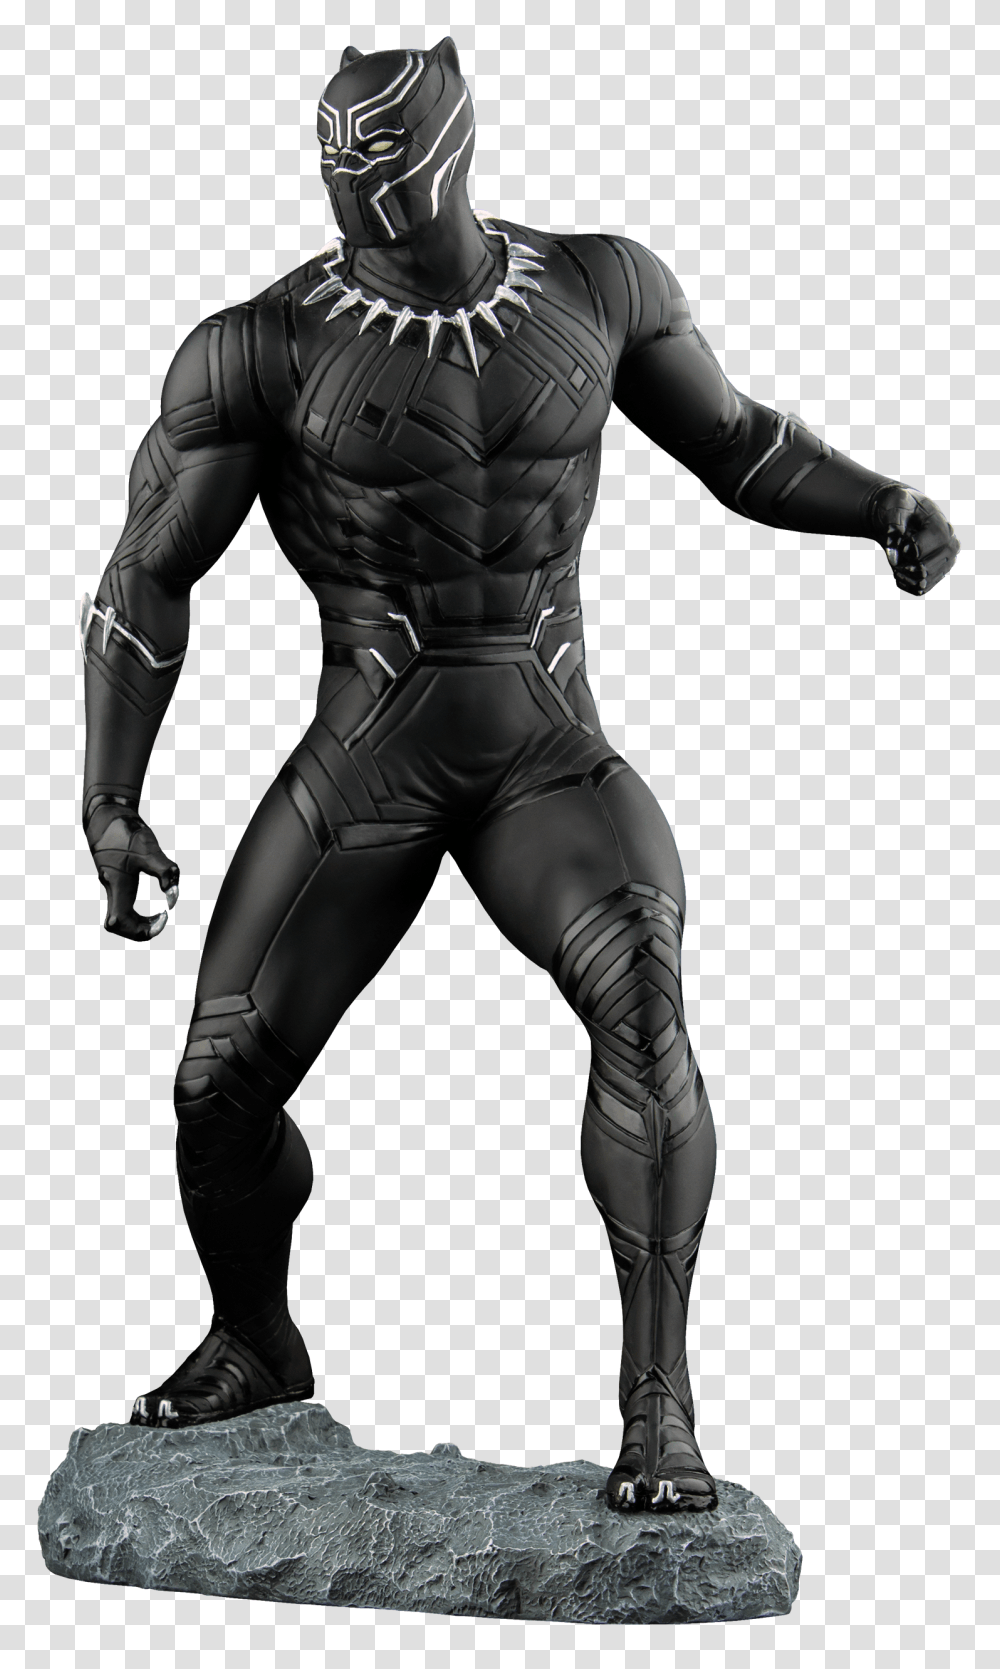 Captain America Civil War Statue Black Panther Scale, Person, Helmet, Batman Transparent Png